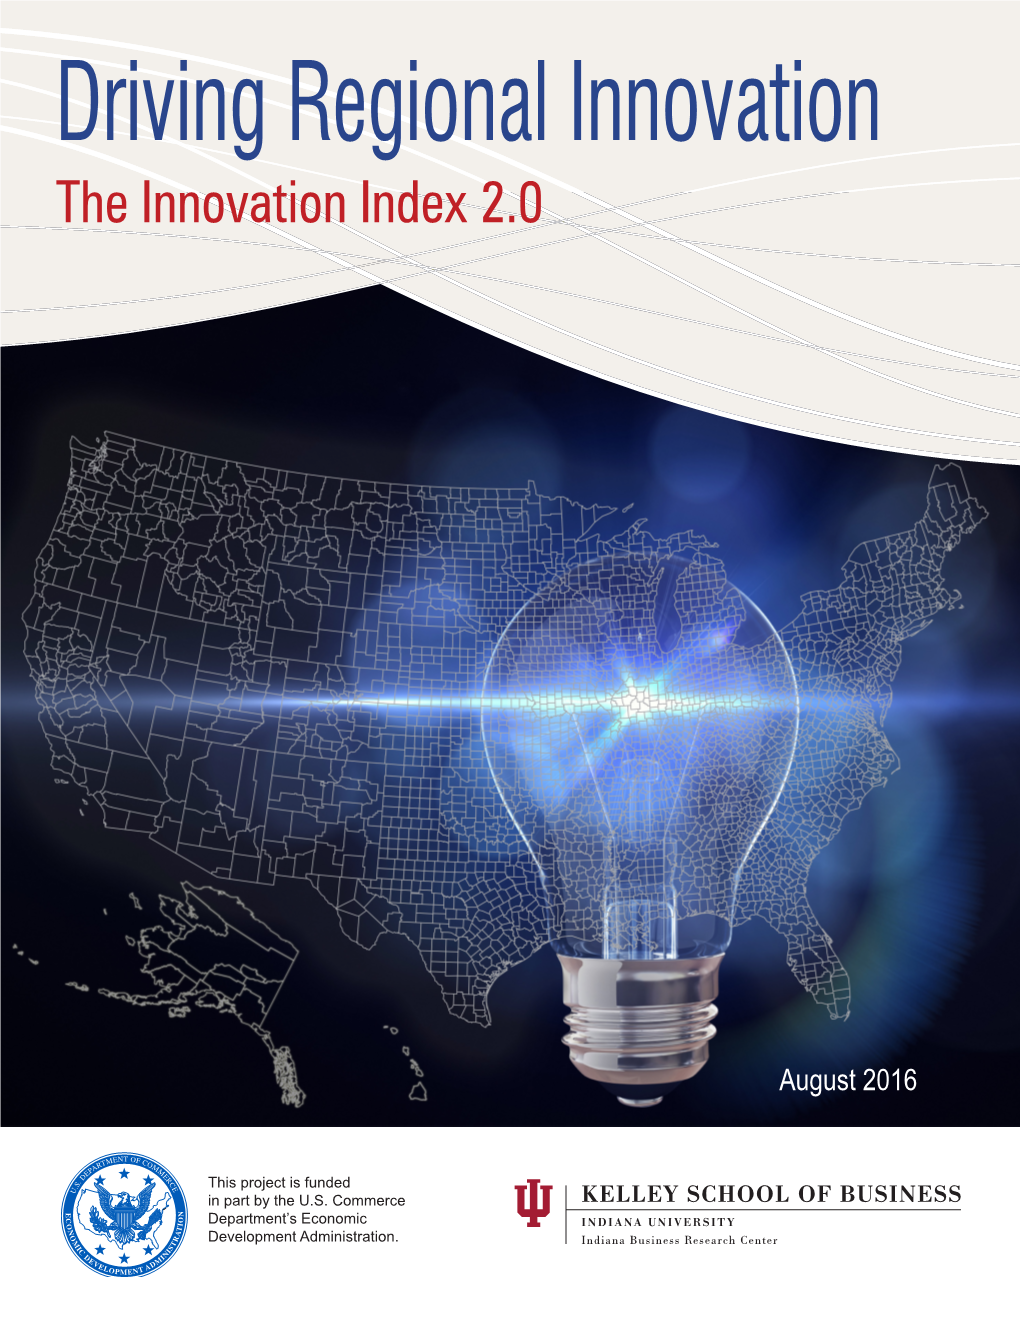 Driving Regional Innovation: the Innovation Index